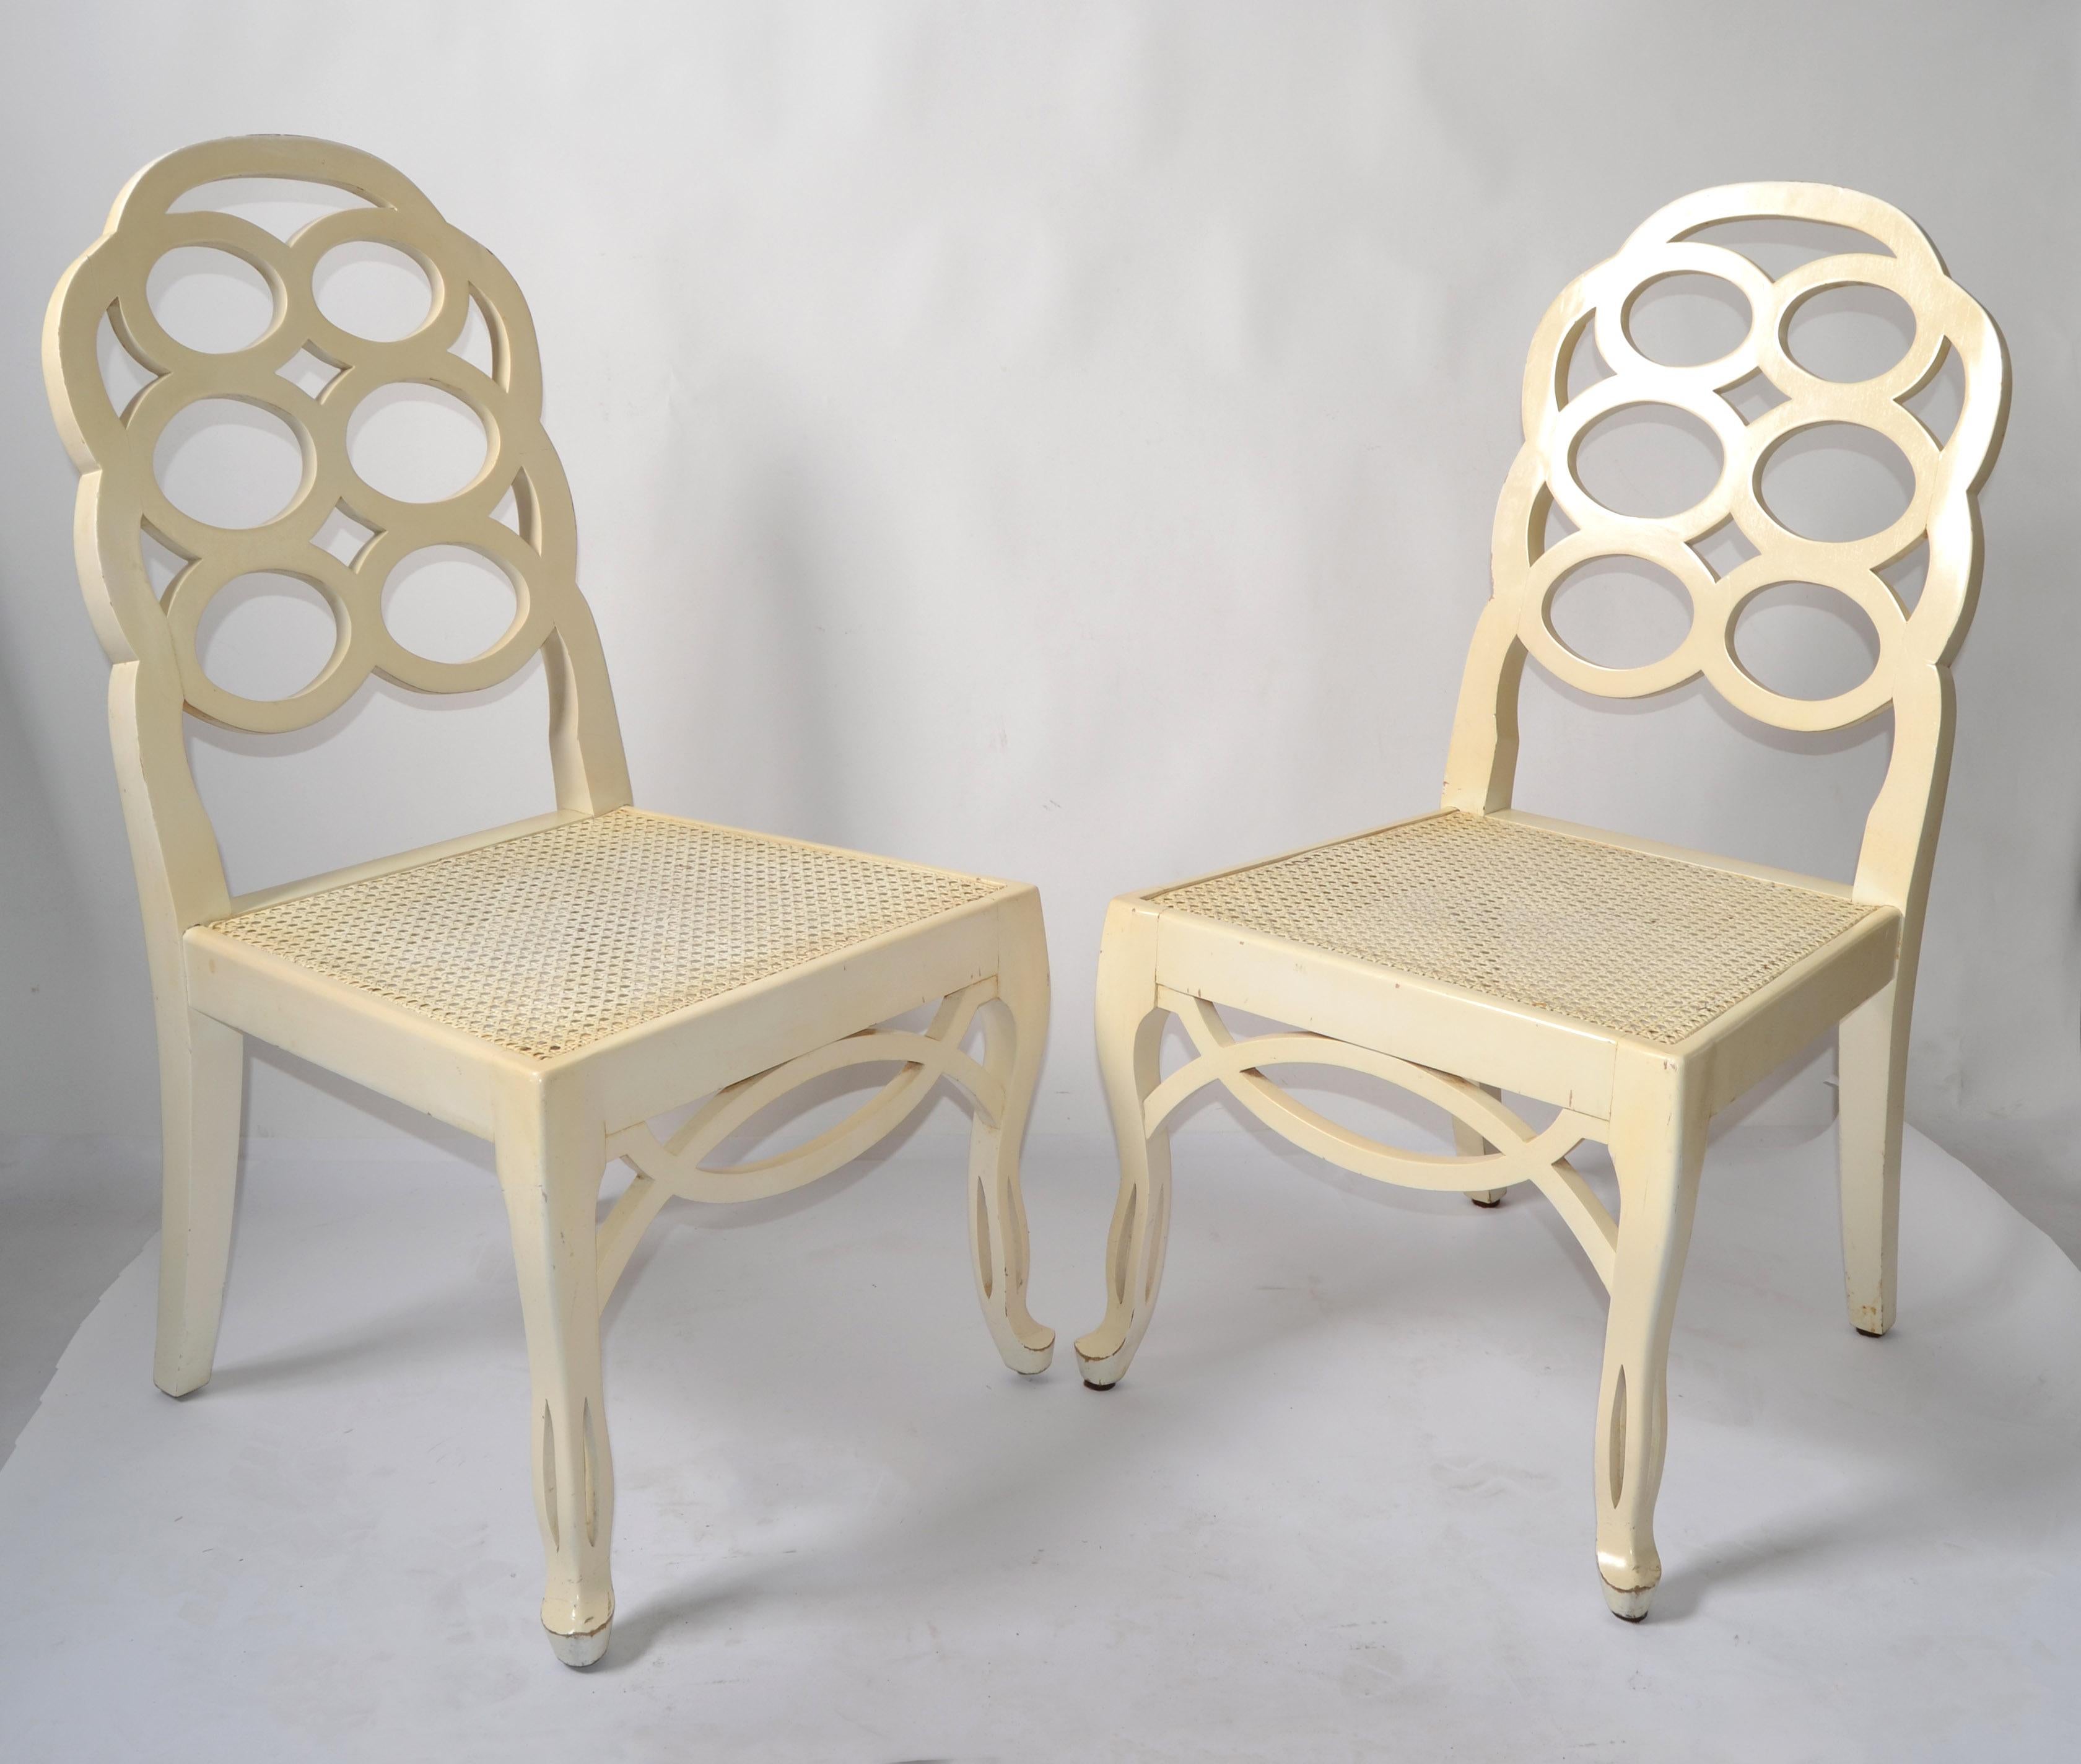 First Edition Pair of Loop Side oder Dining Chairs von Frances Elkins entworfen und in Spanien um 1965 gemacht.
Regency-Periode mit handgeschnitzten Beinen, Schürzenverzierung und beide sind mit dem originalen handgeflochtenen Rohrsitz.
Die